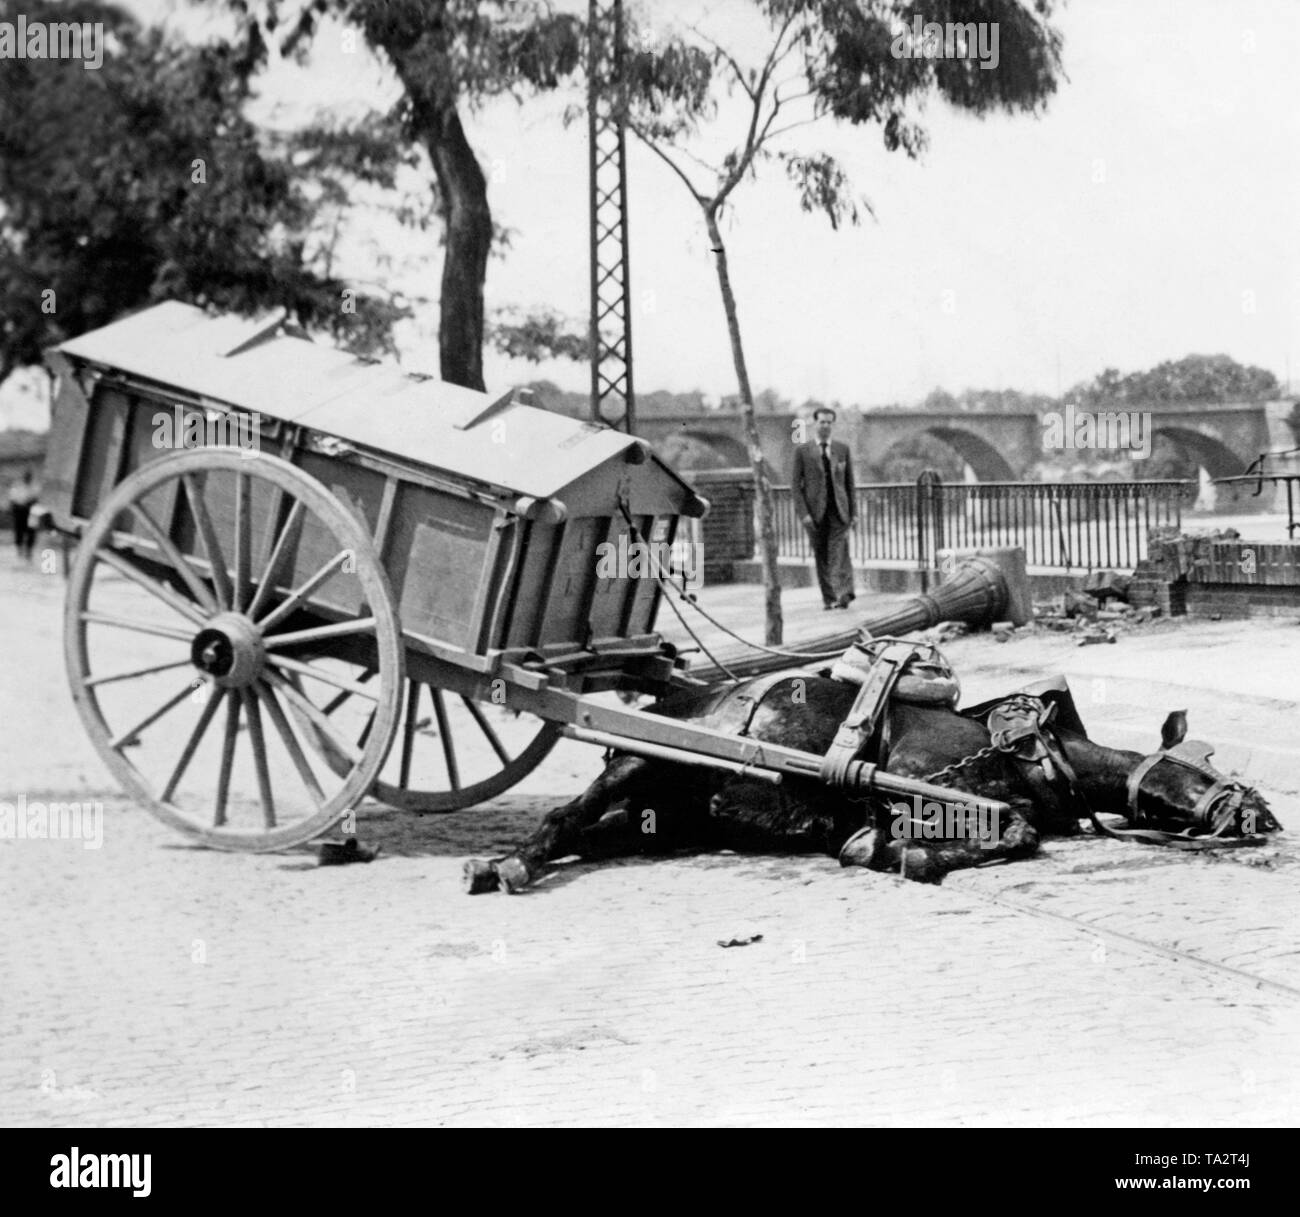 Photo d'un cheval tué par une attaque à la bombe dans une ville en Soania à l'été 1936. Le cheval avait déjà été exploitée pour un panier. Dans l'arrière-plan, un passant observe la scène. Banque D'Images